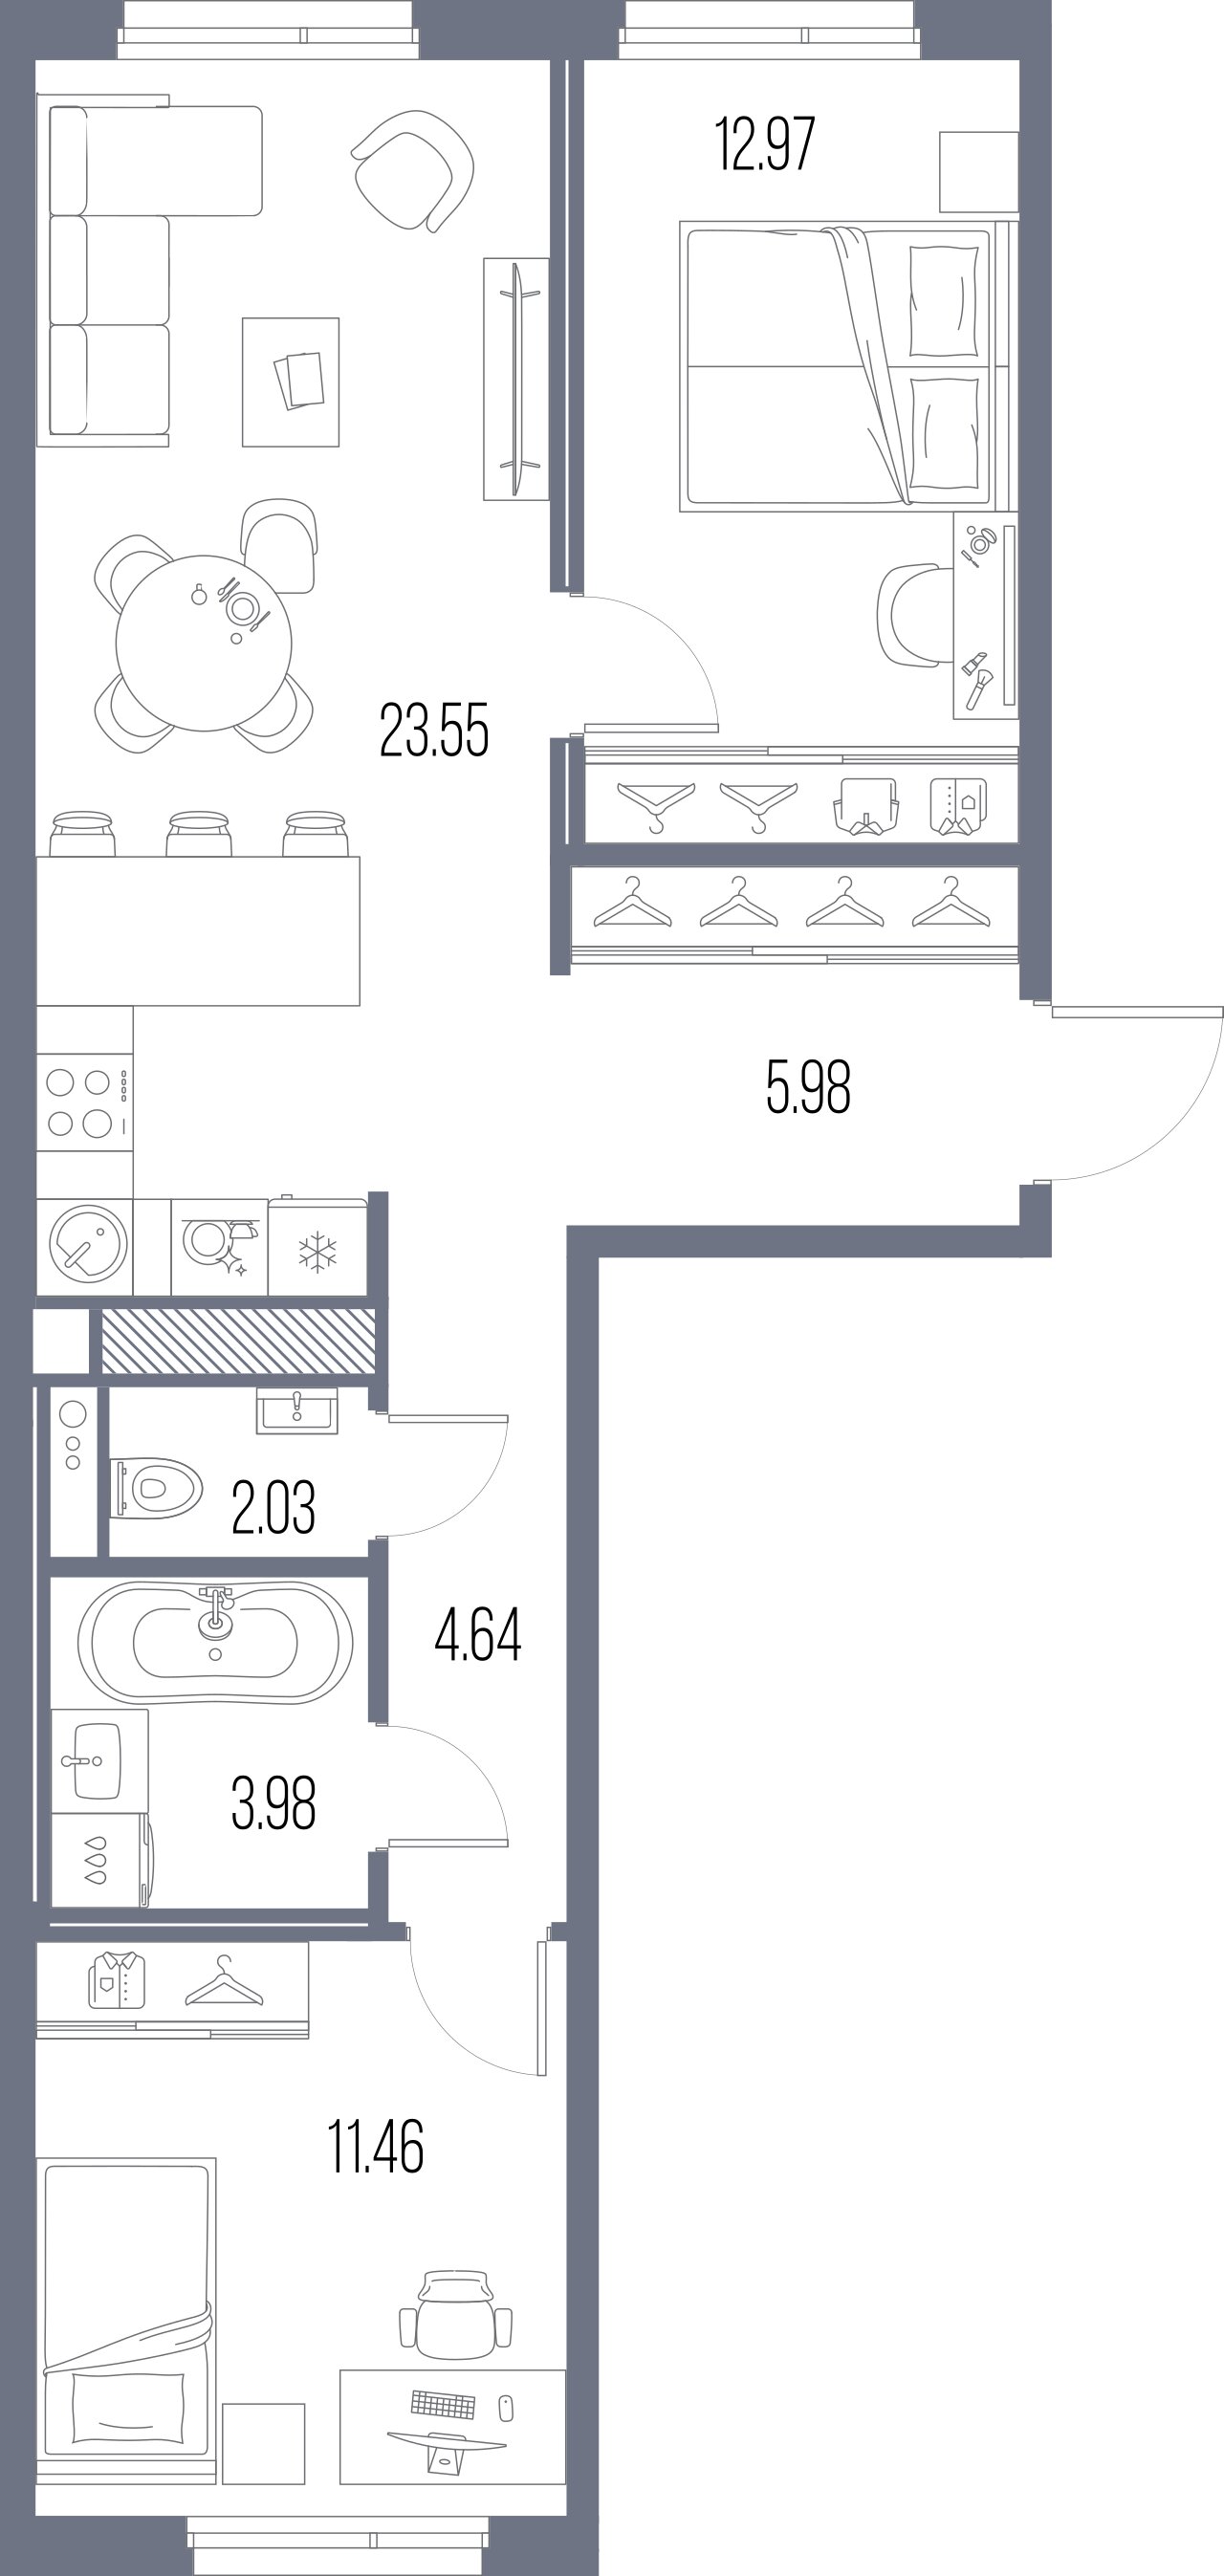 2-комнатная квартира, 64.61 м²; этаж: 8 - купить в Санкт-Петербурге